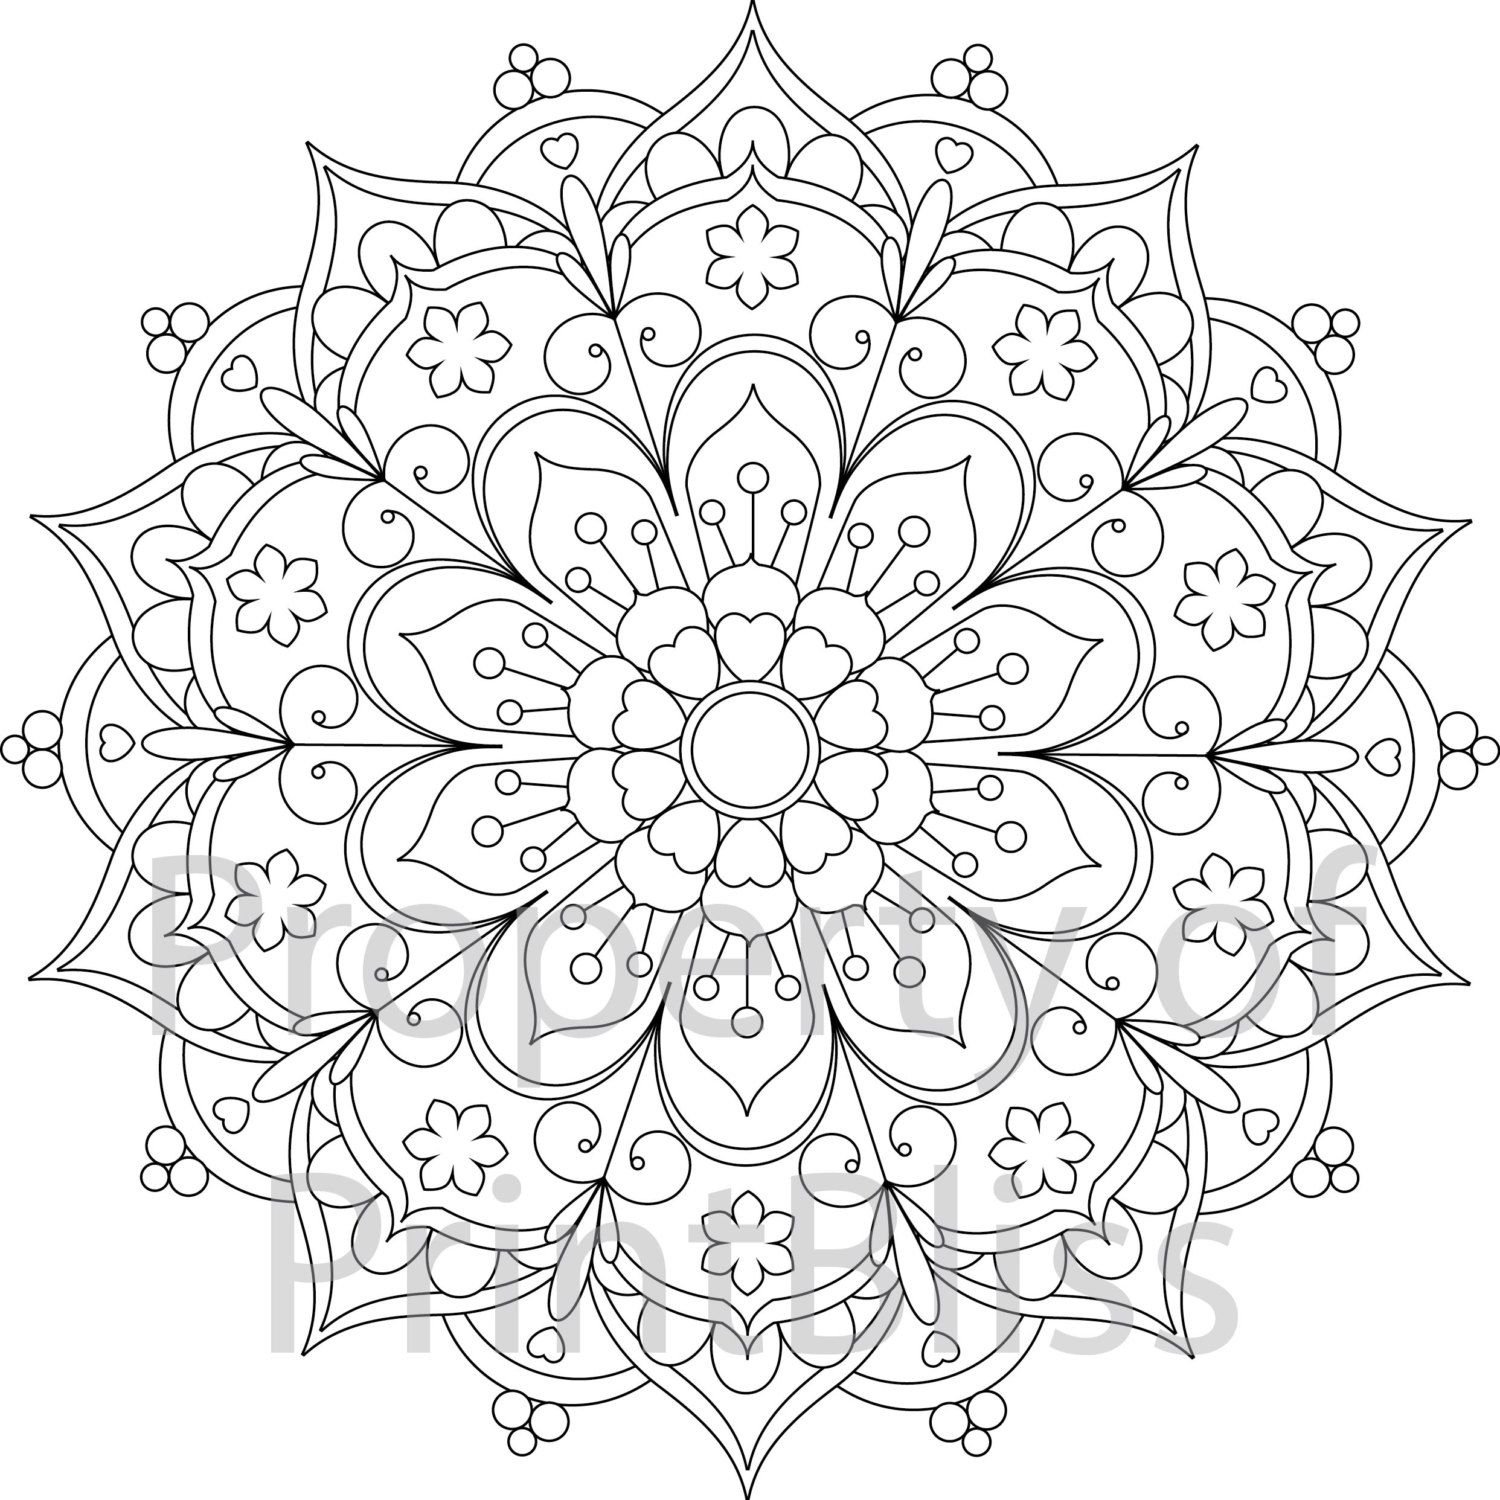 Mandala-para-descarregar-em-pdf-7 - Mandalas - Coloring Pages for Adults